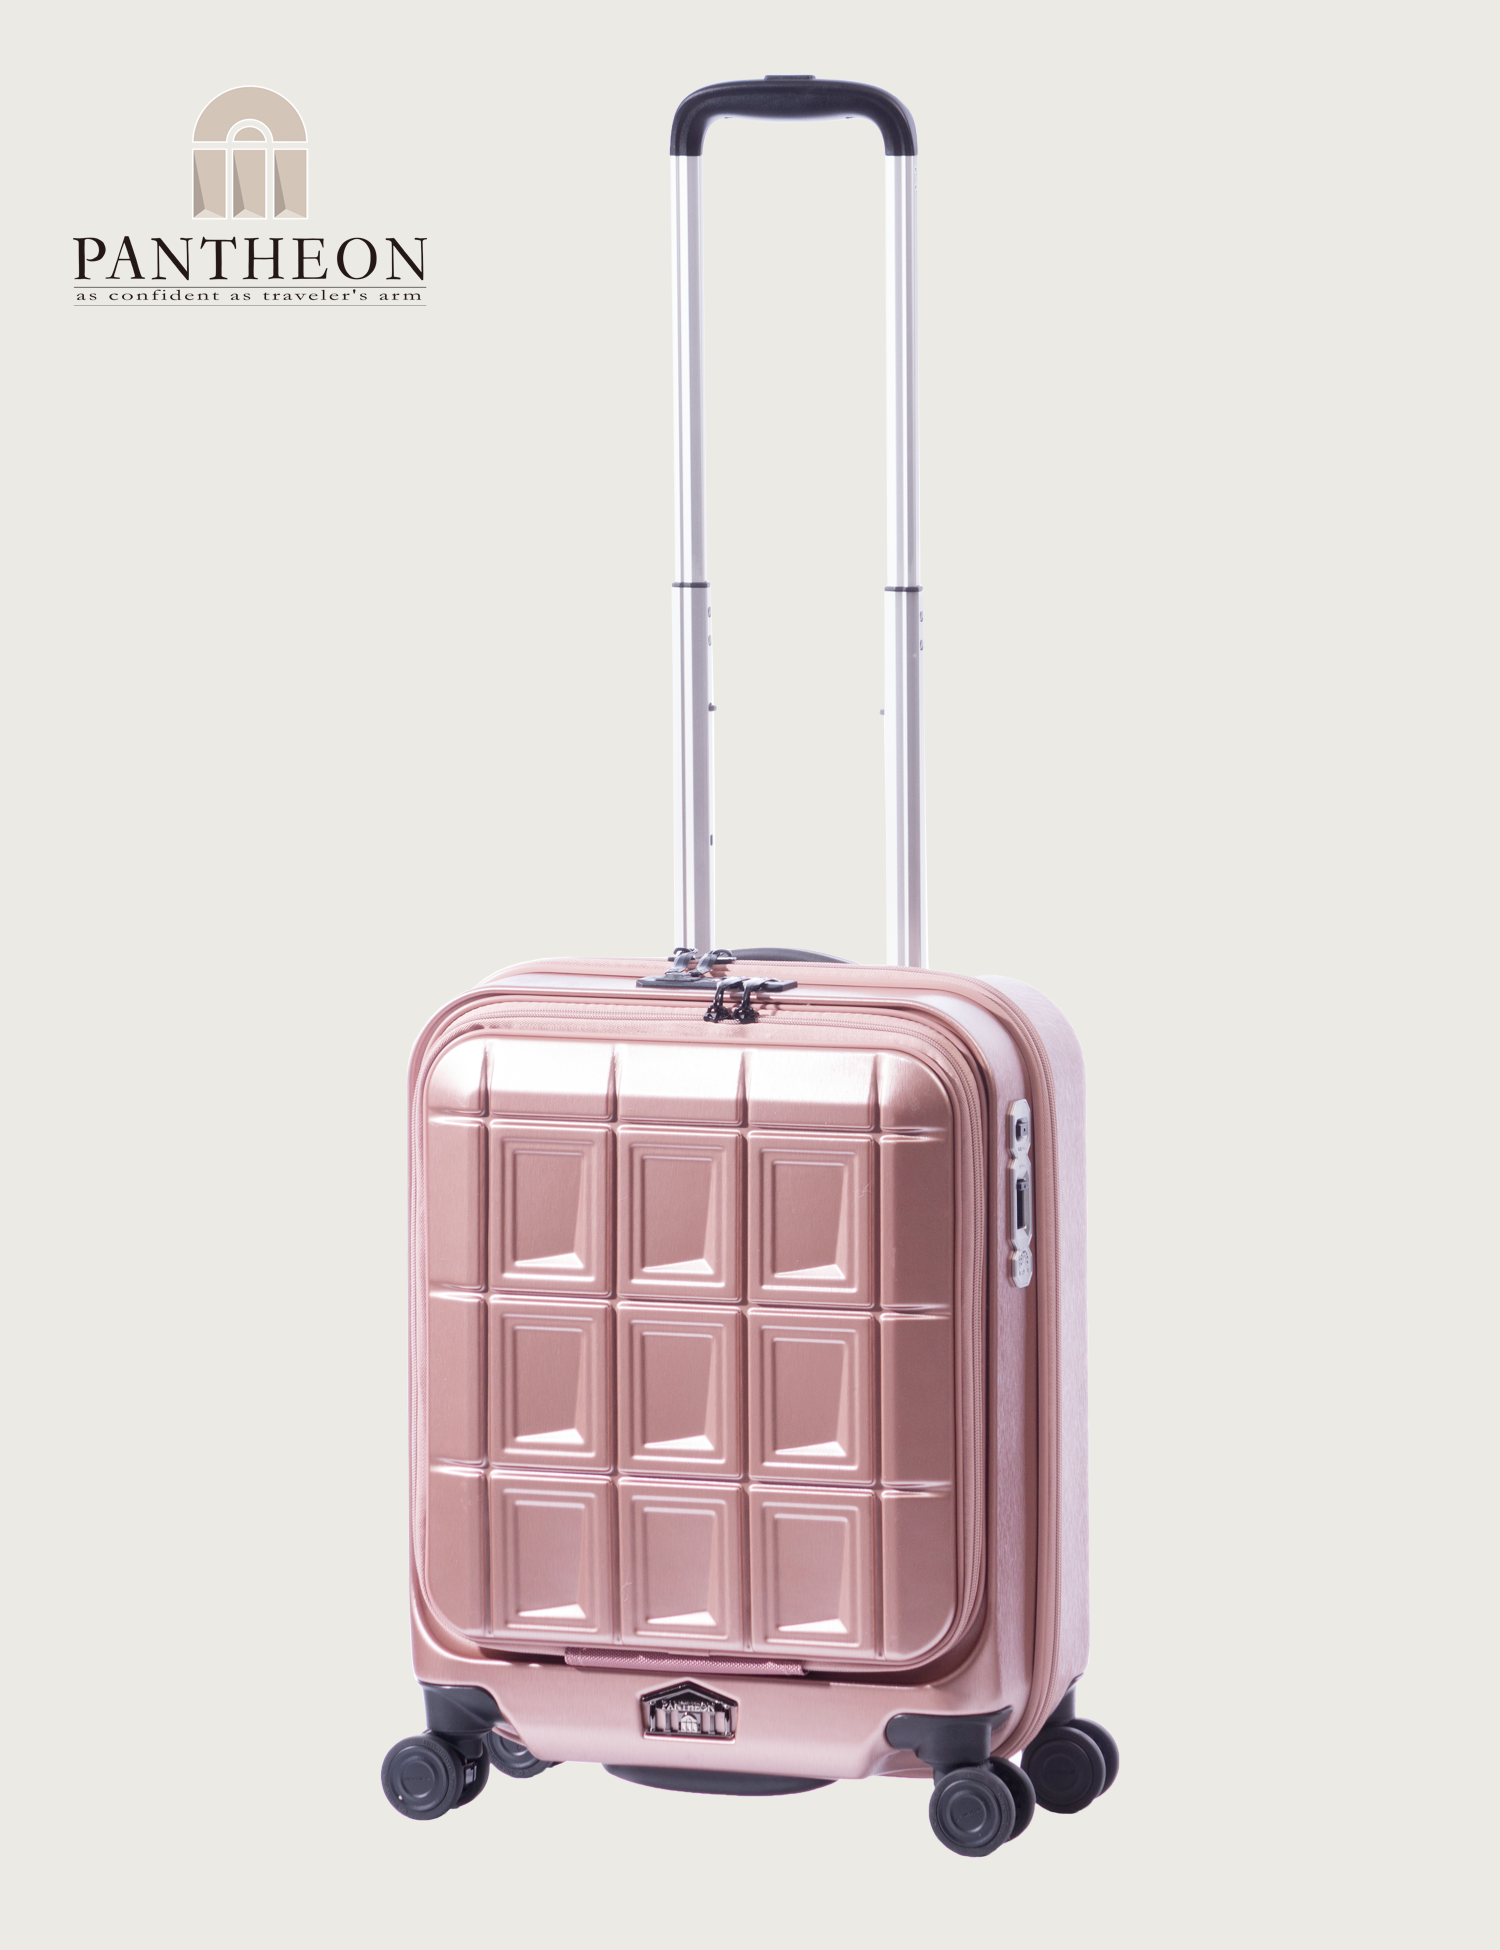 アジア・ラゲージのスーツケース PANTHEON (パンテオン) | アジア 